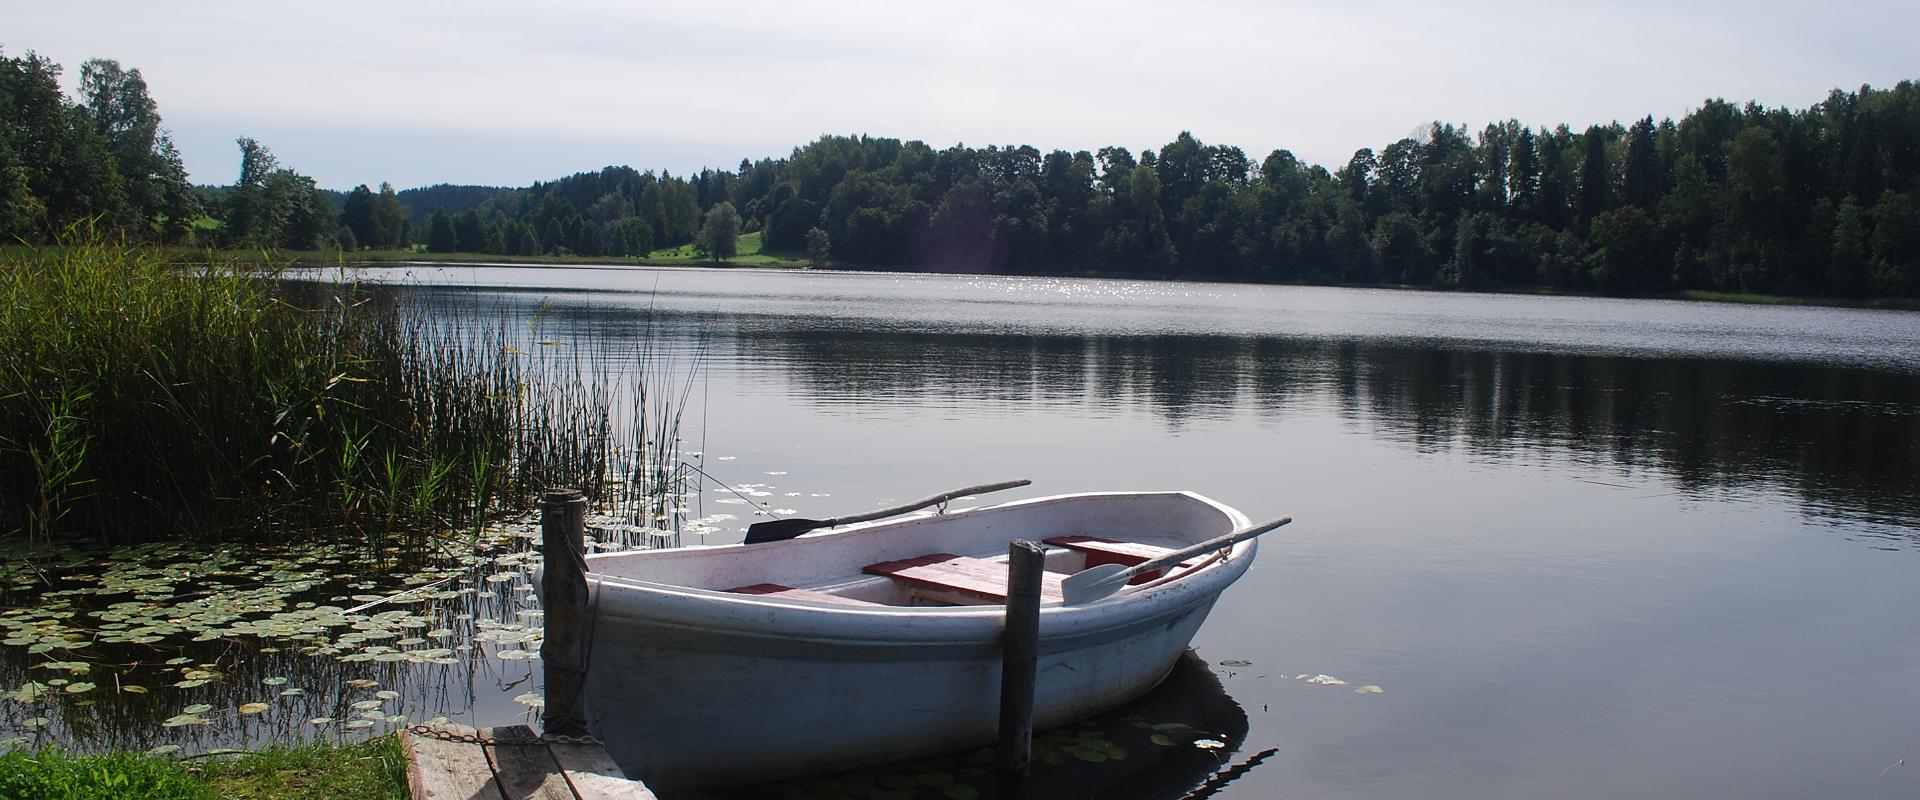 Ööbikuorg ja Rõugen järvet